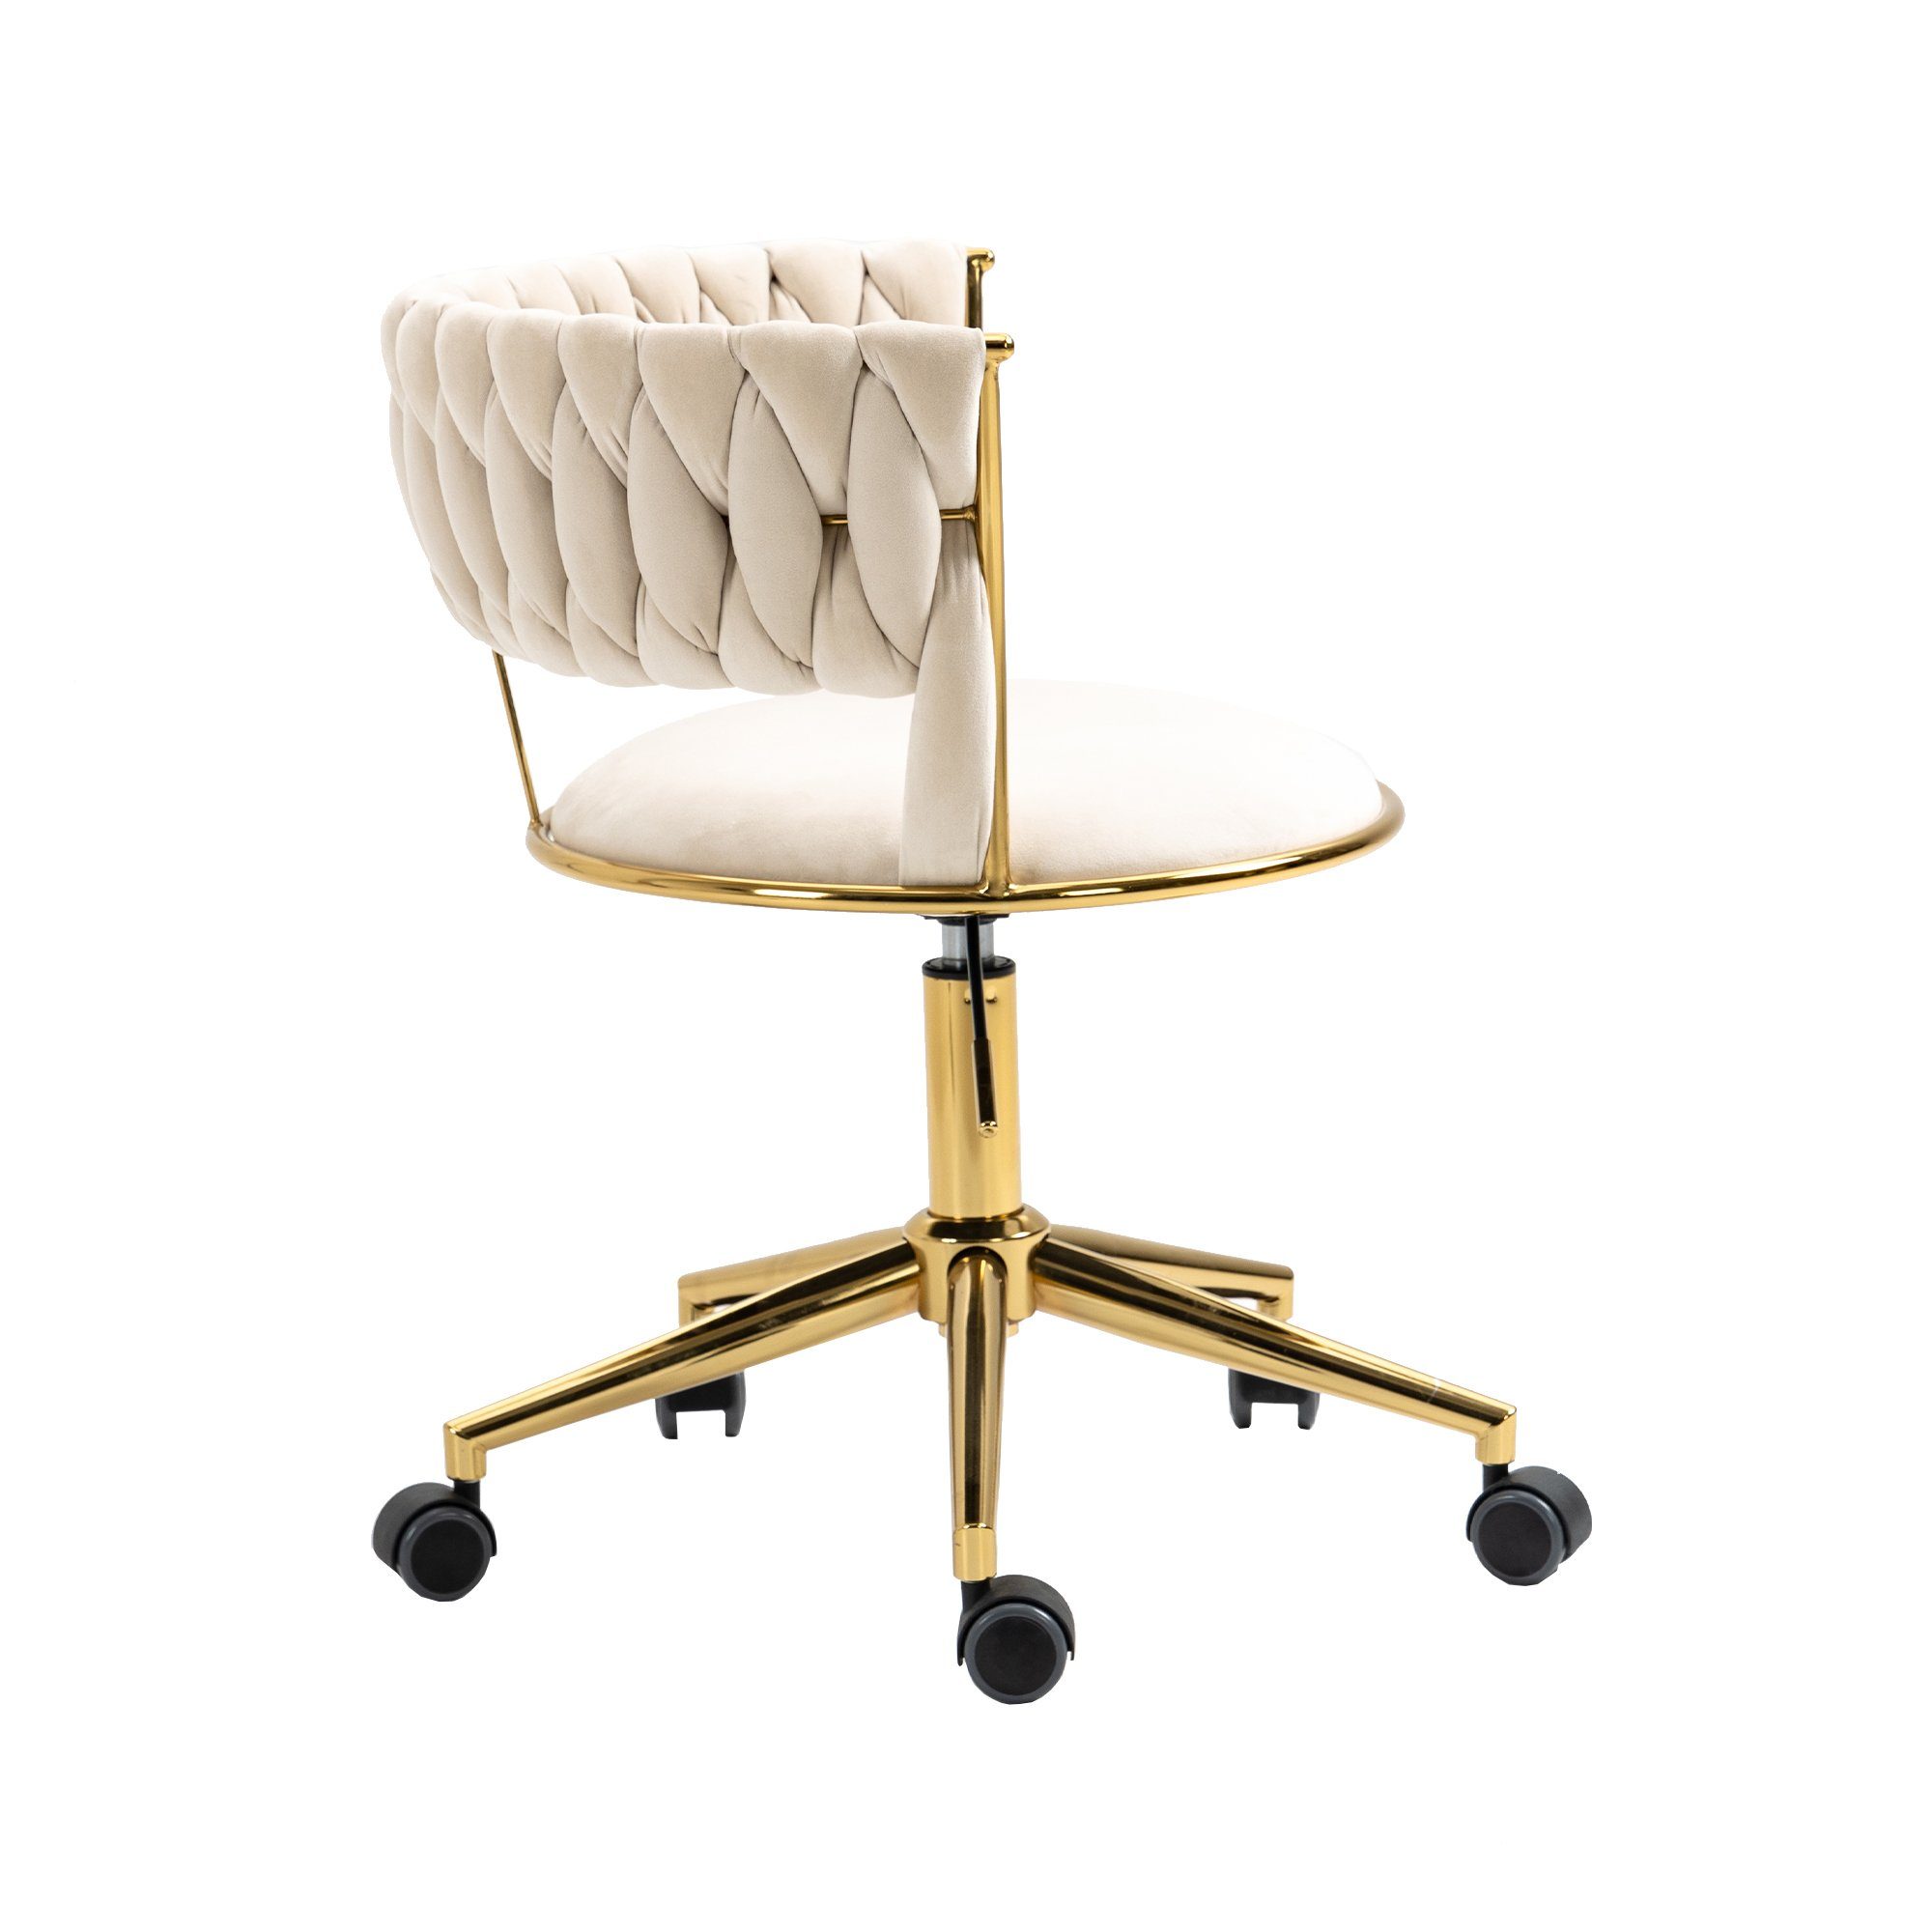 goldener drehbarer St), (1 WISHDOR 360° Drehstuhl, 360° Make-up-Stuhl, Elfenbein Bürostuhl, drehbarer Polsterstuhl Bürostuhl